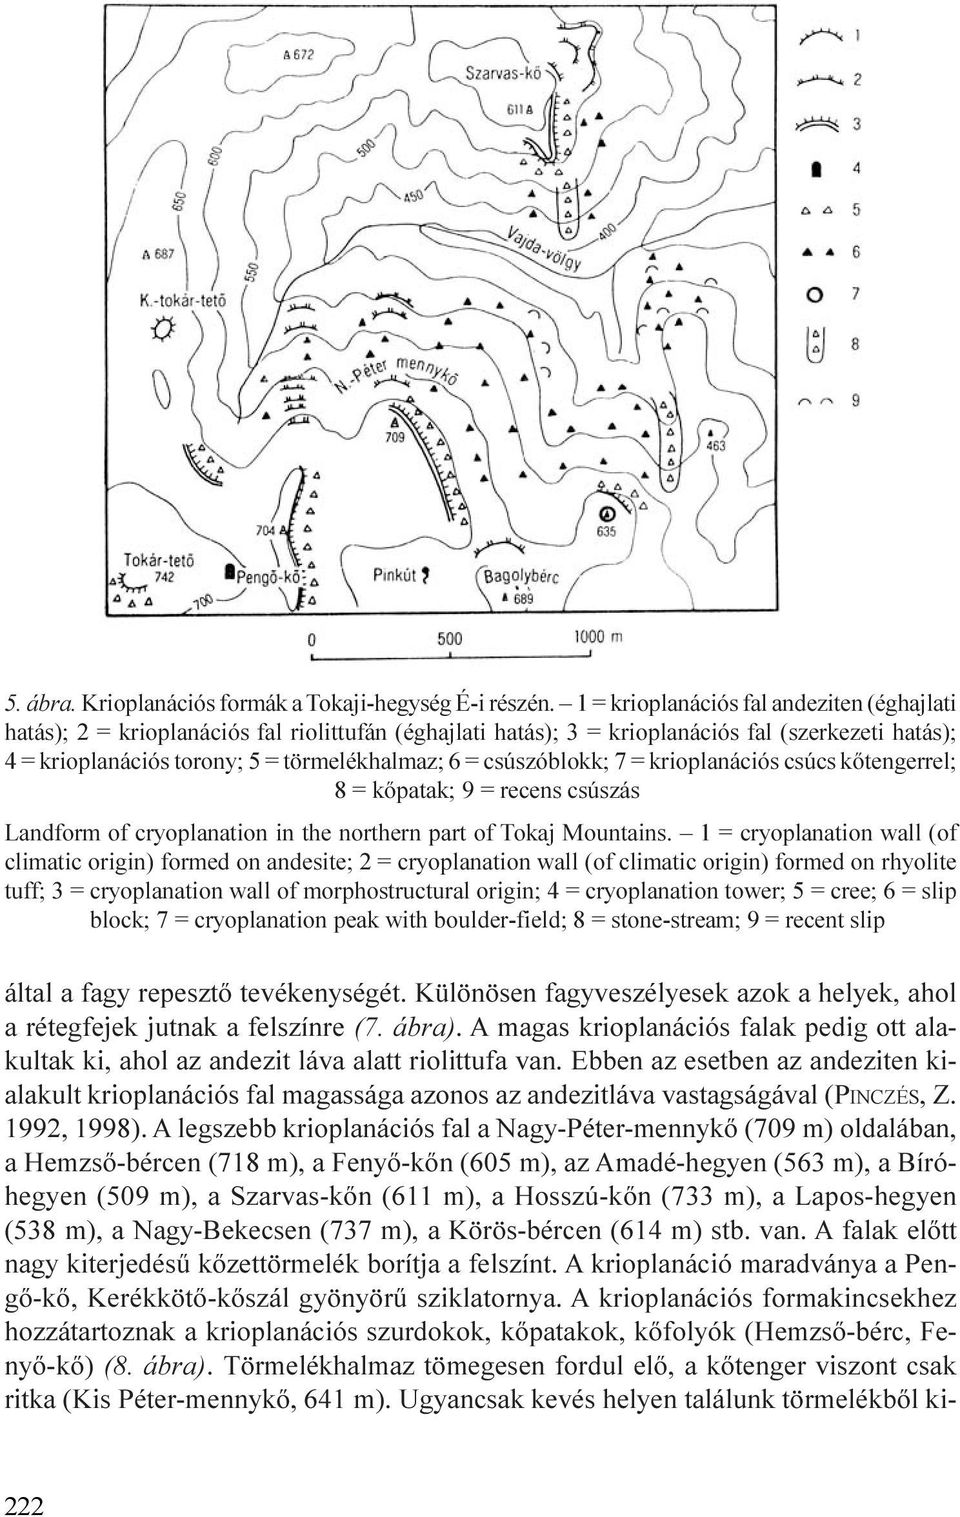 csúszóblokk; 7 = krioplanációs csúcs kõtengerrel; 8 = kõpatak; 9 = recens csúszás Landform of cryoplanation in the northern part of Tokaj Mountains.